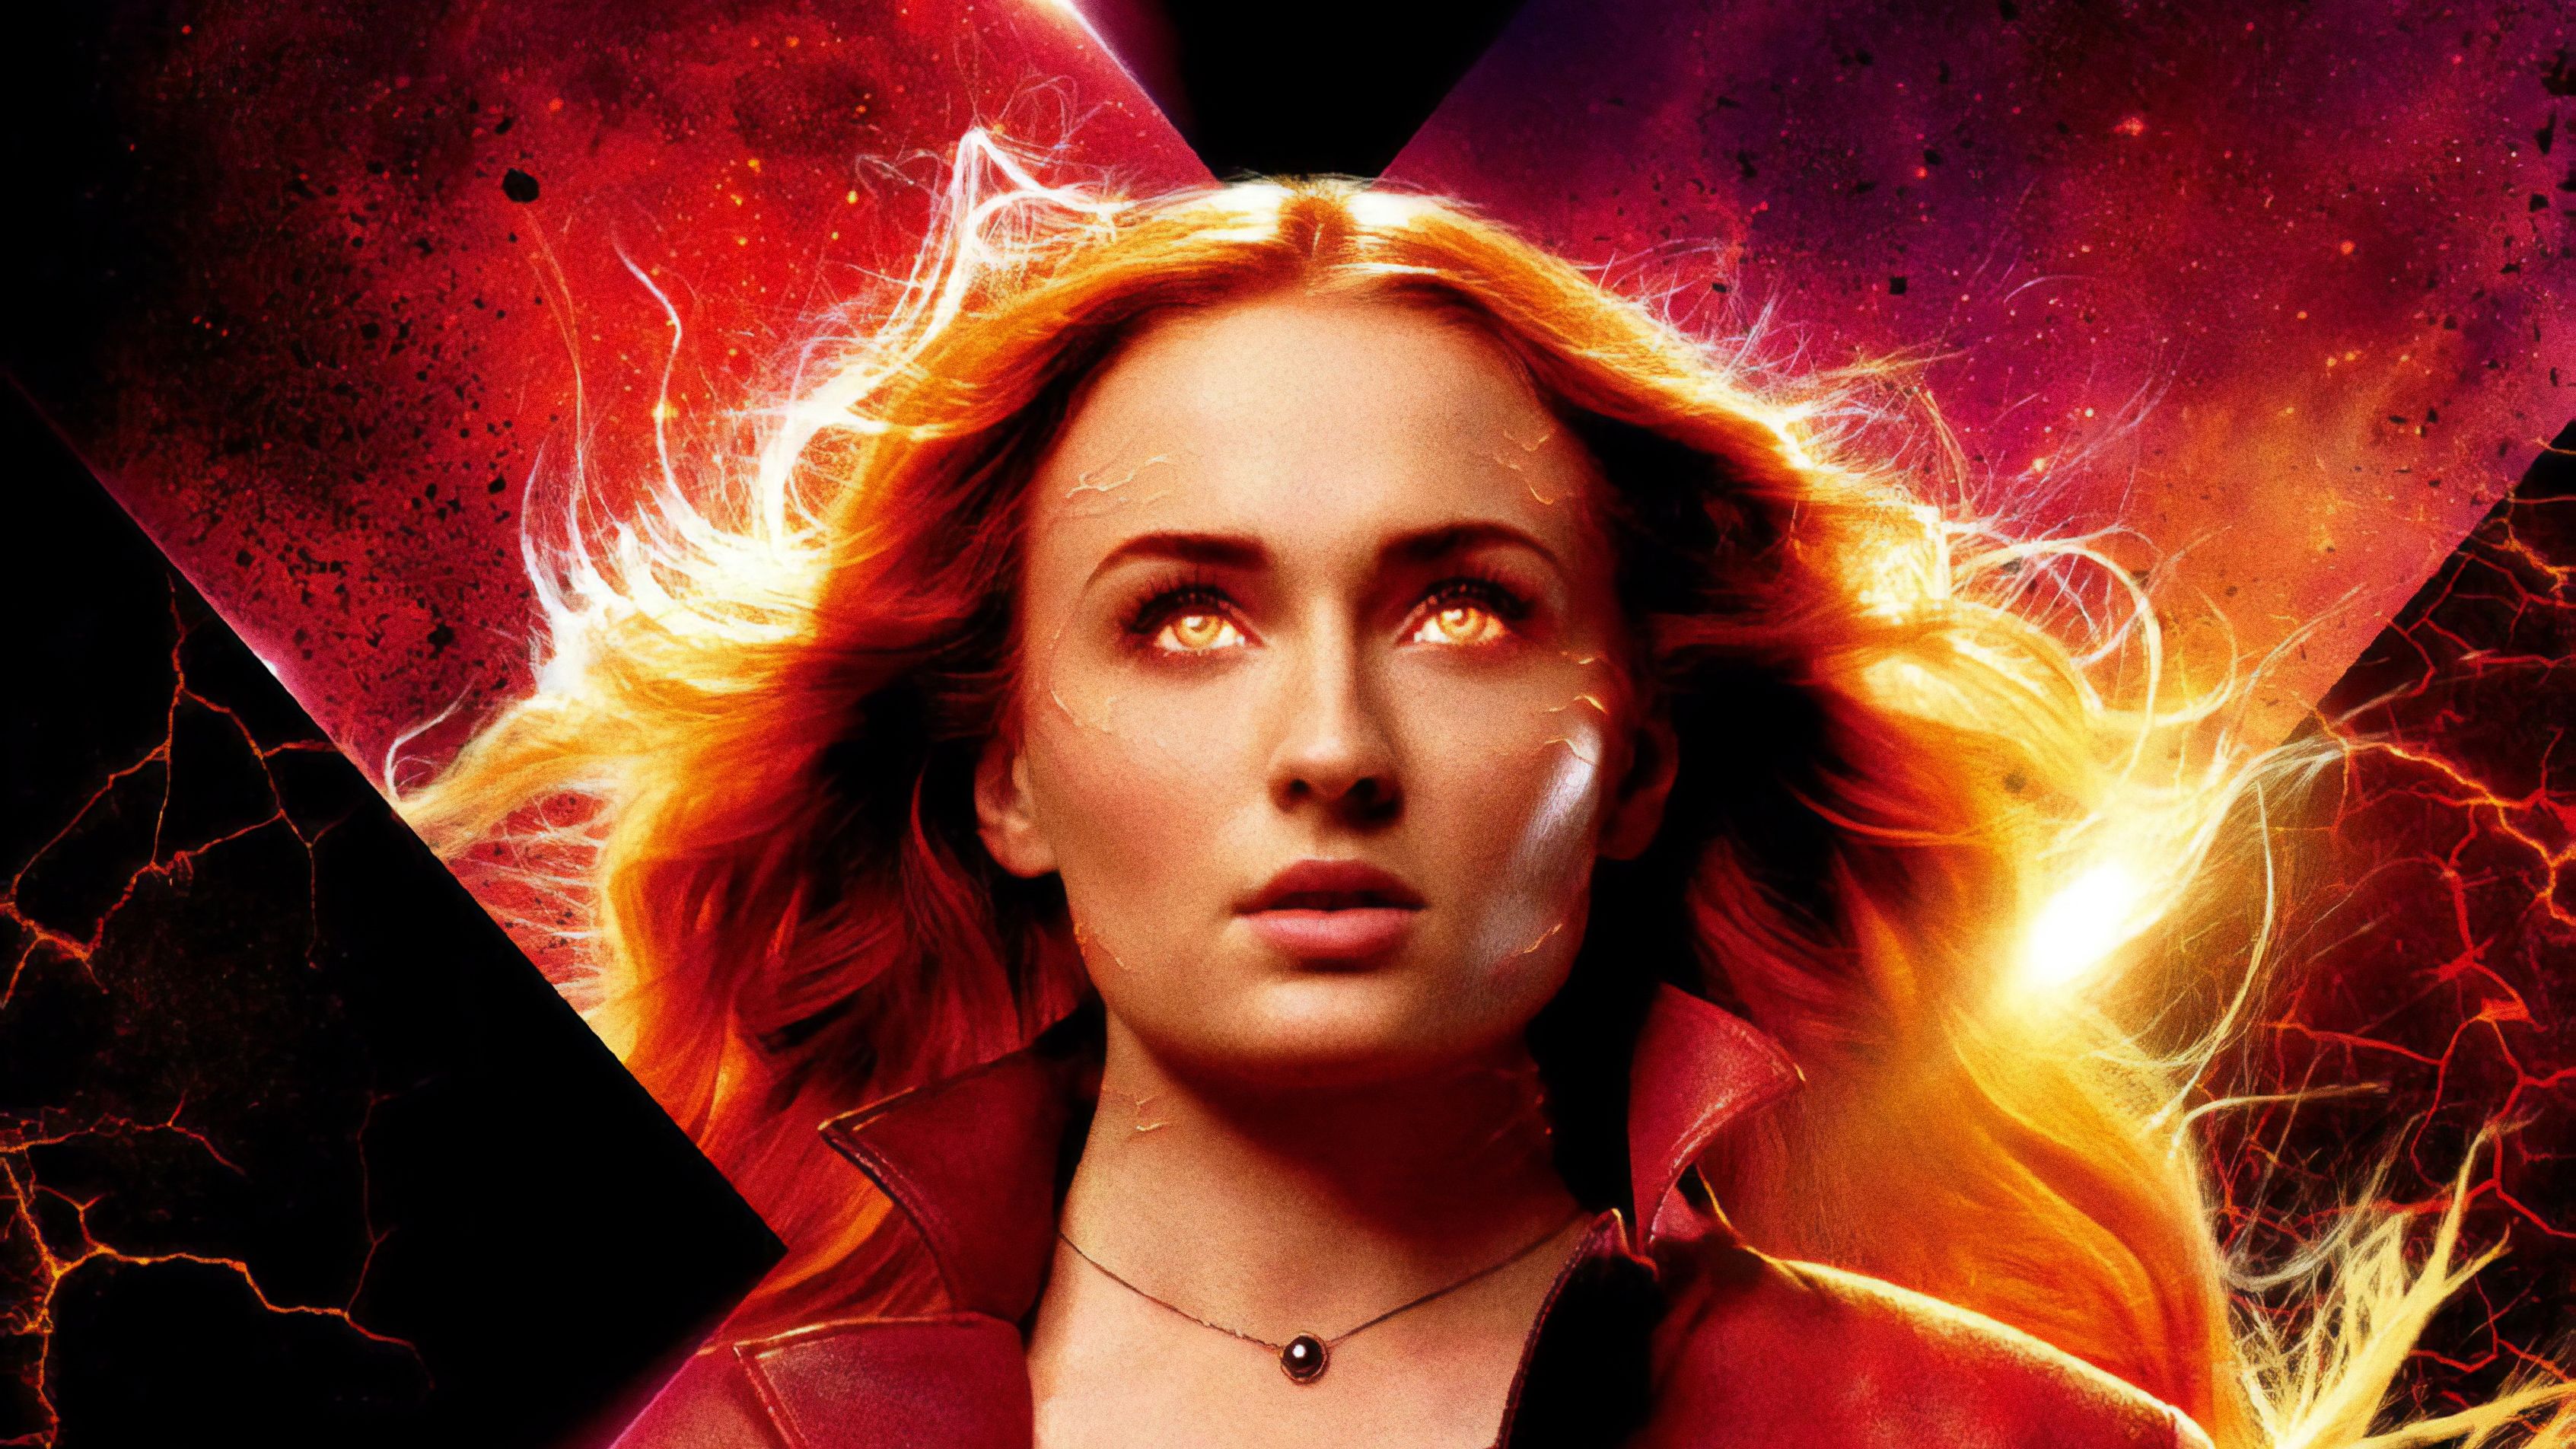 Dark Phoenix X-Men Movie Poster Wallpapers